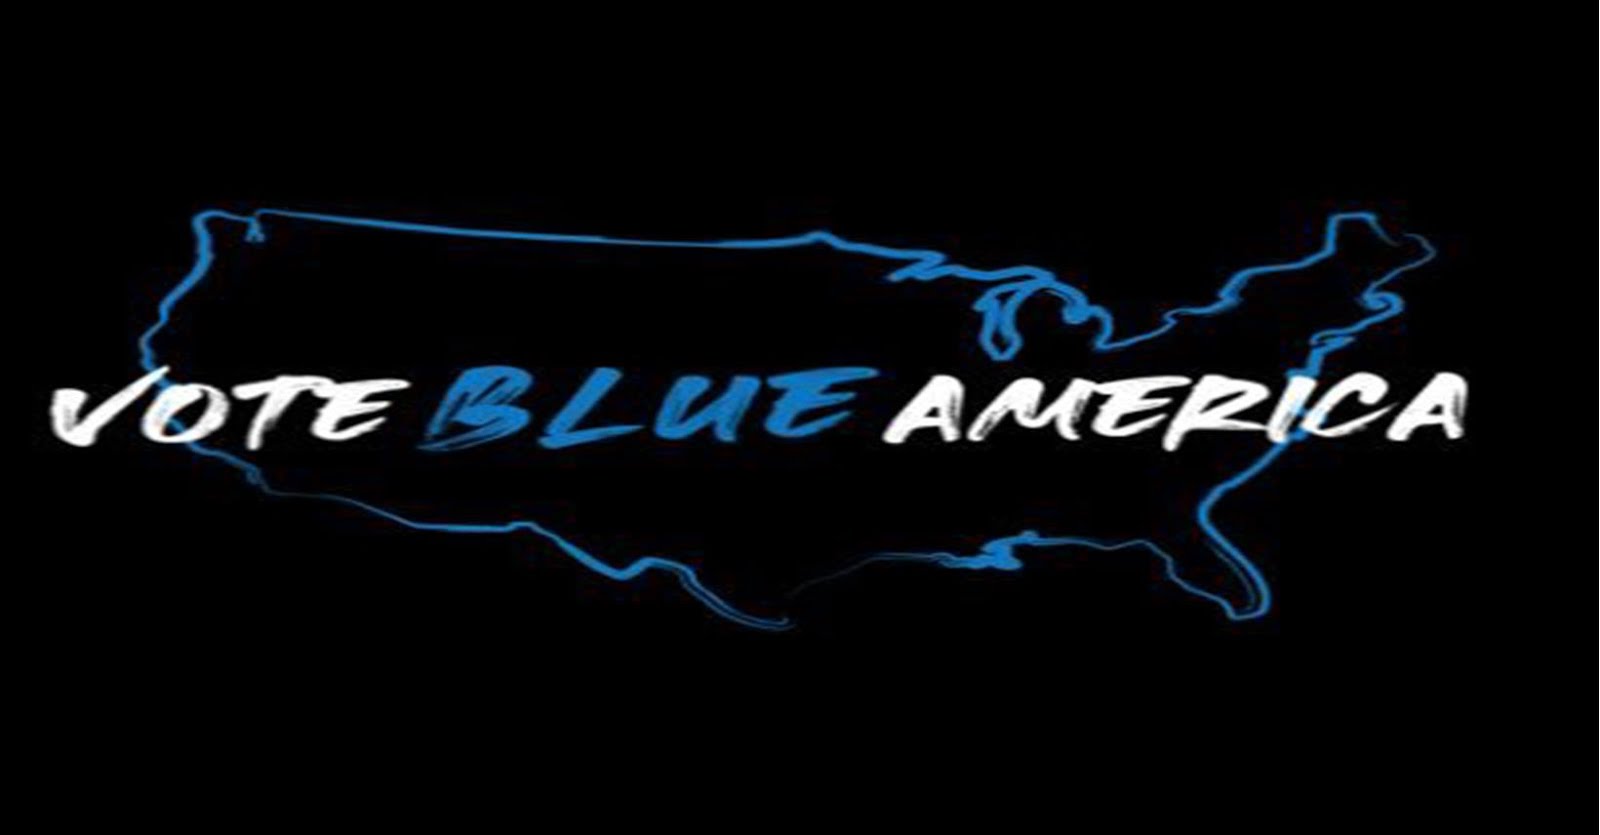 VOTE BLUE AMERICA